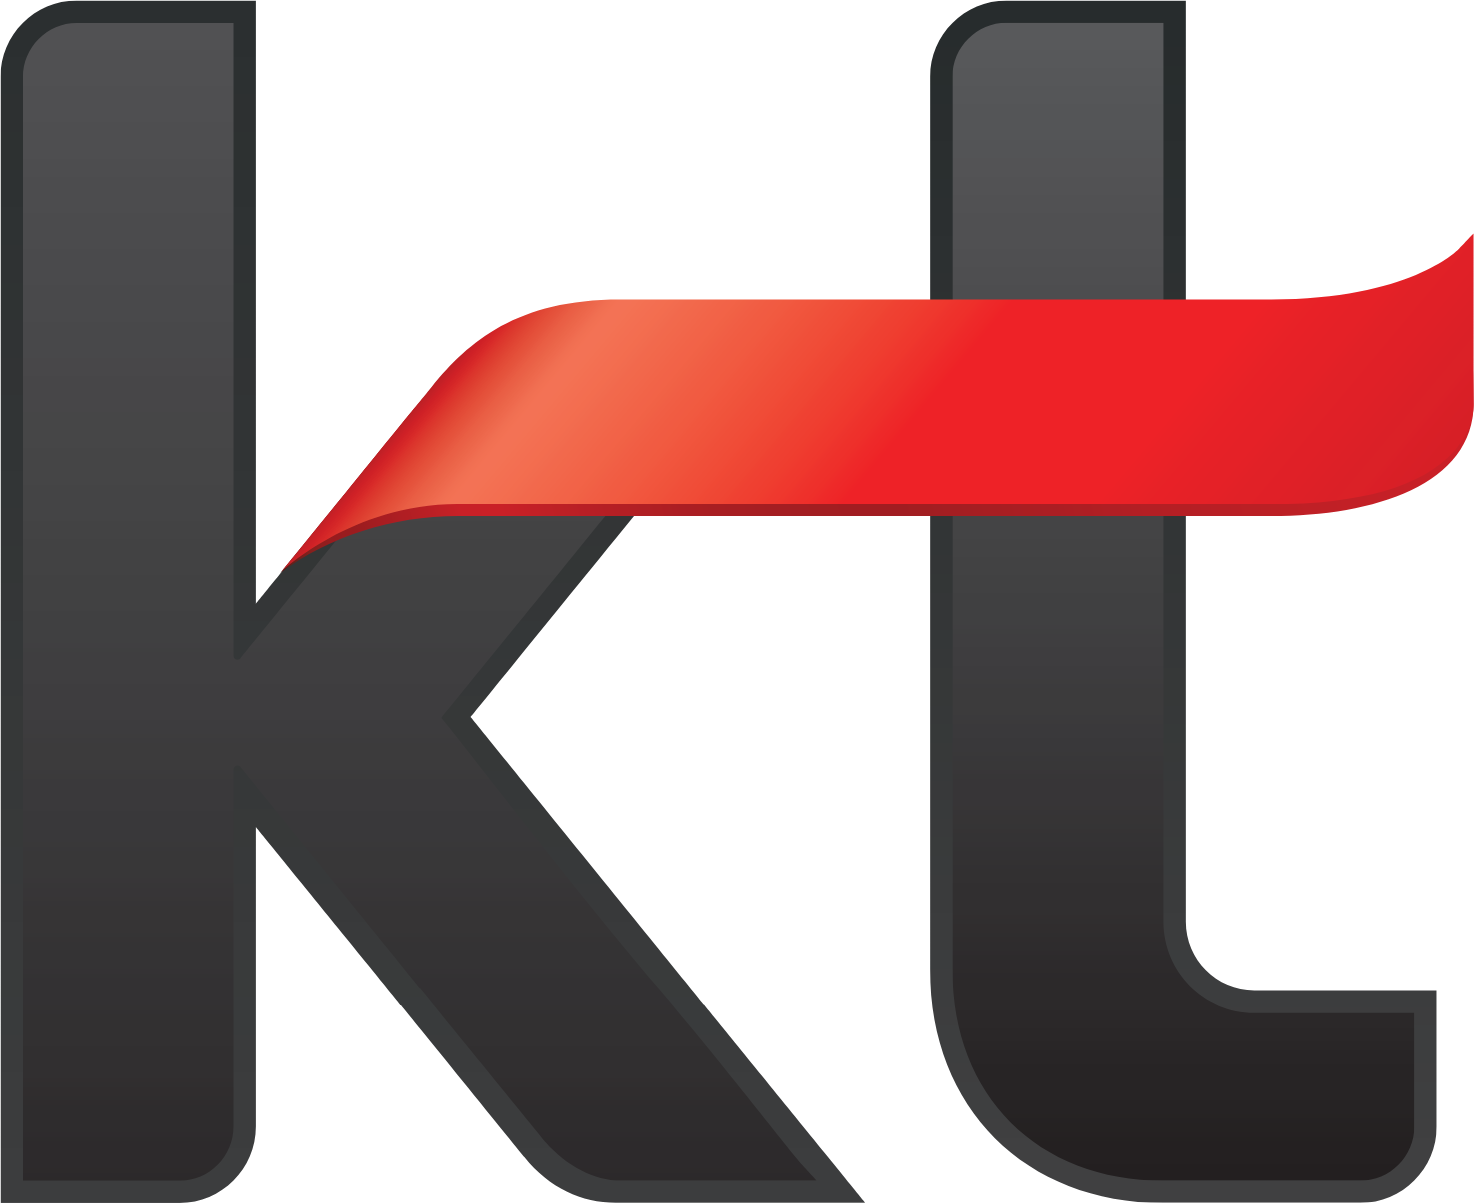 KT Corporation logo (transparent PNG)